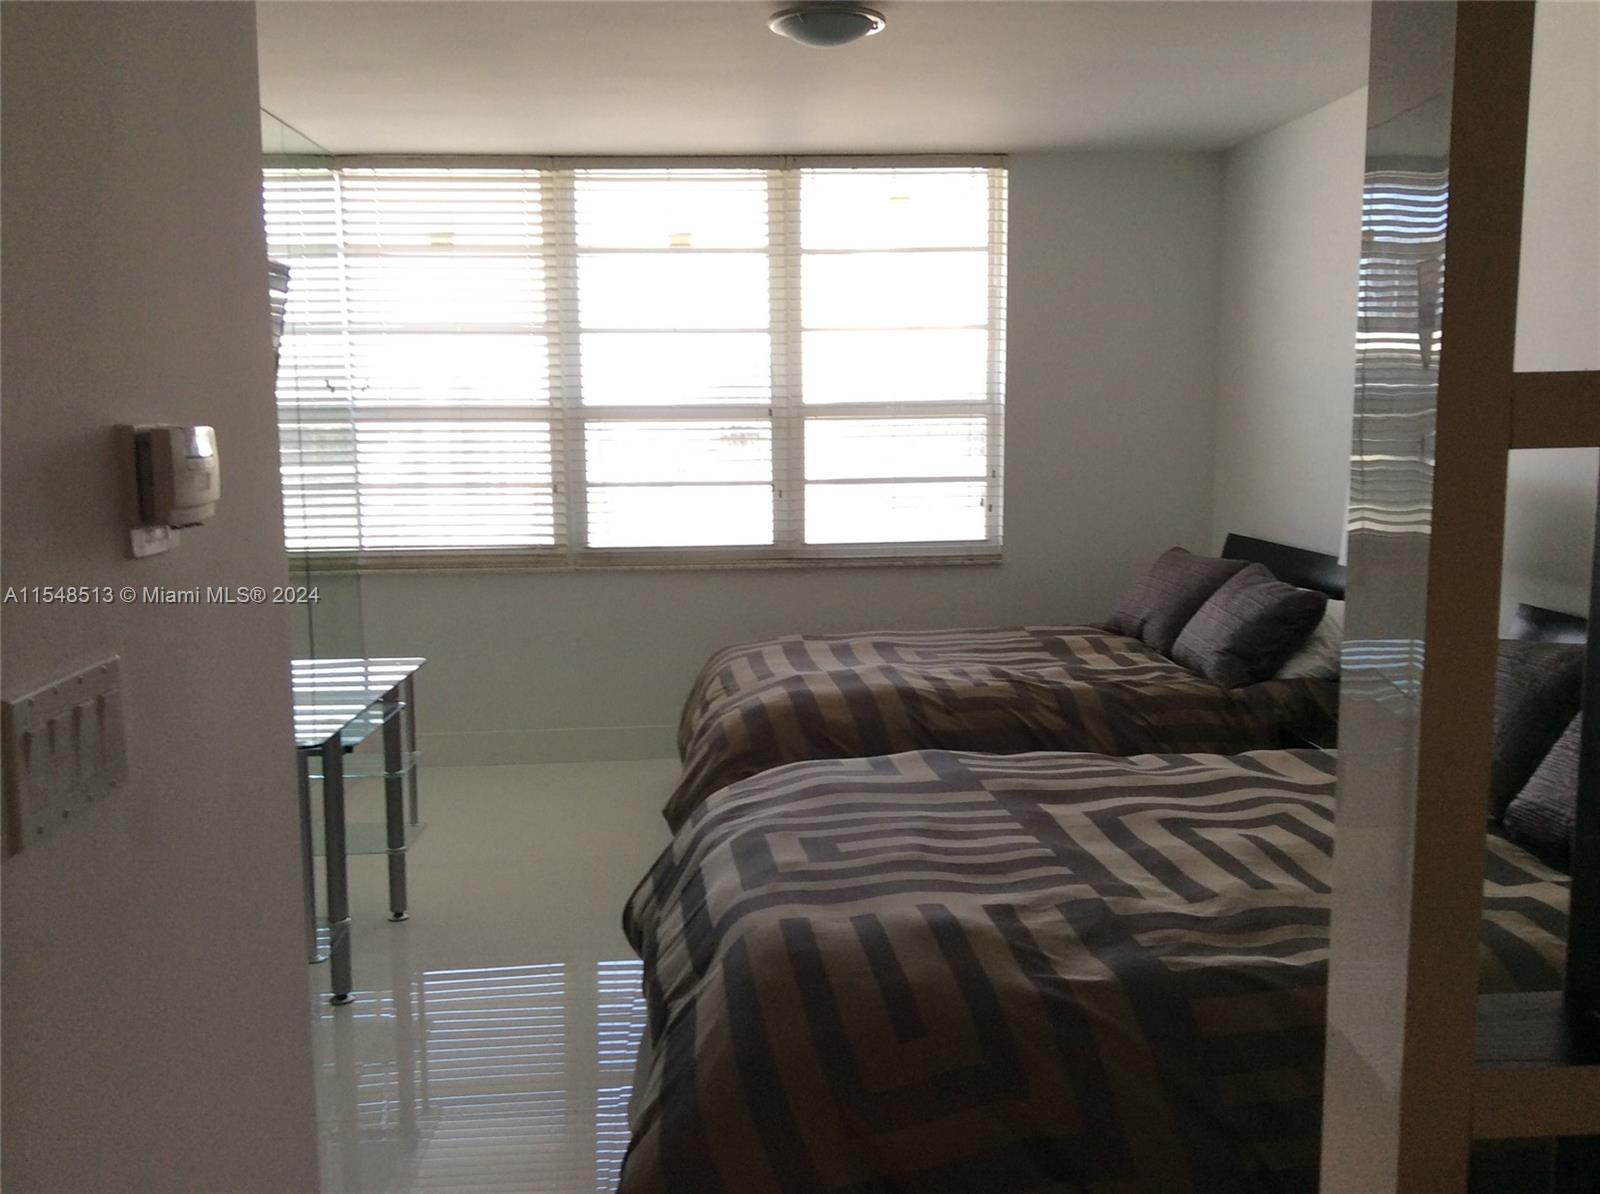 Rental Property at 100 Lincoln Rd 1214A, Miami Beach, Miami-Dade County, Florida - Bathrooms: 1  - $2,100 MO.